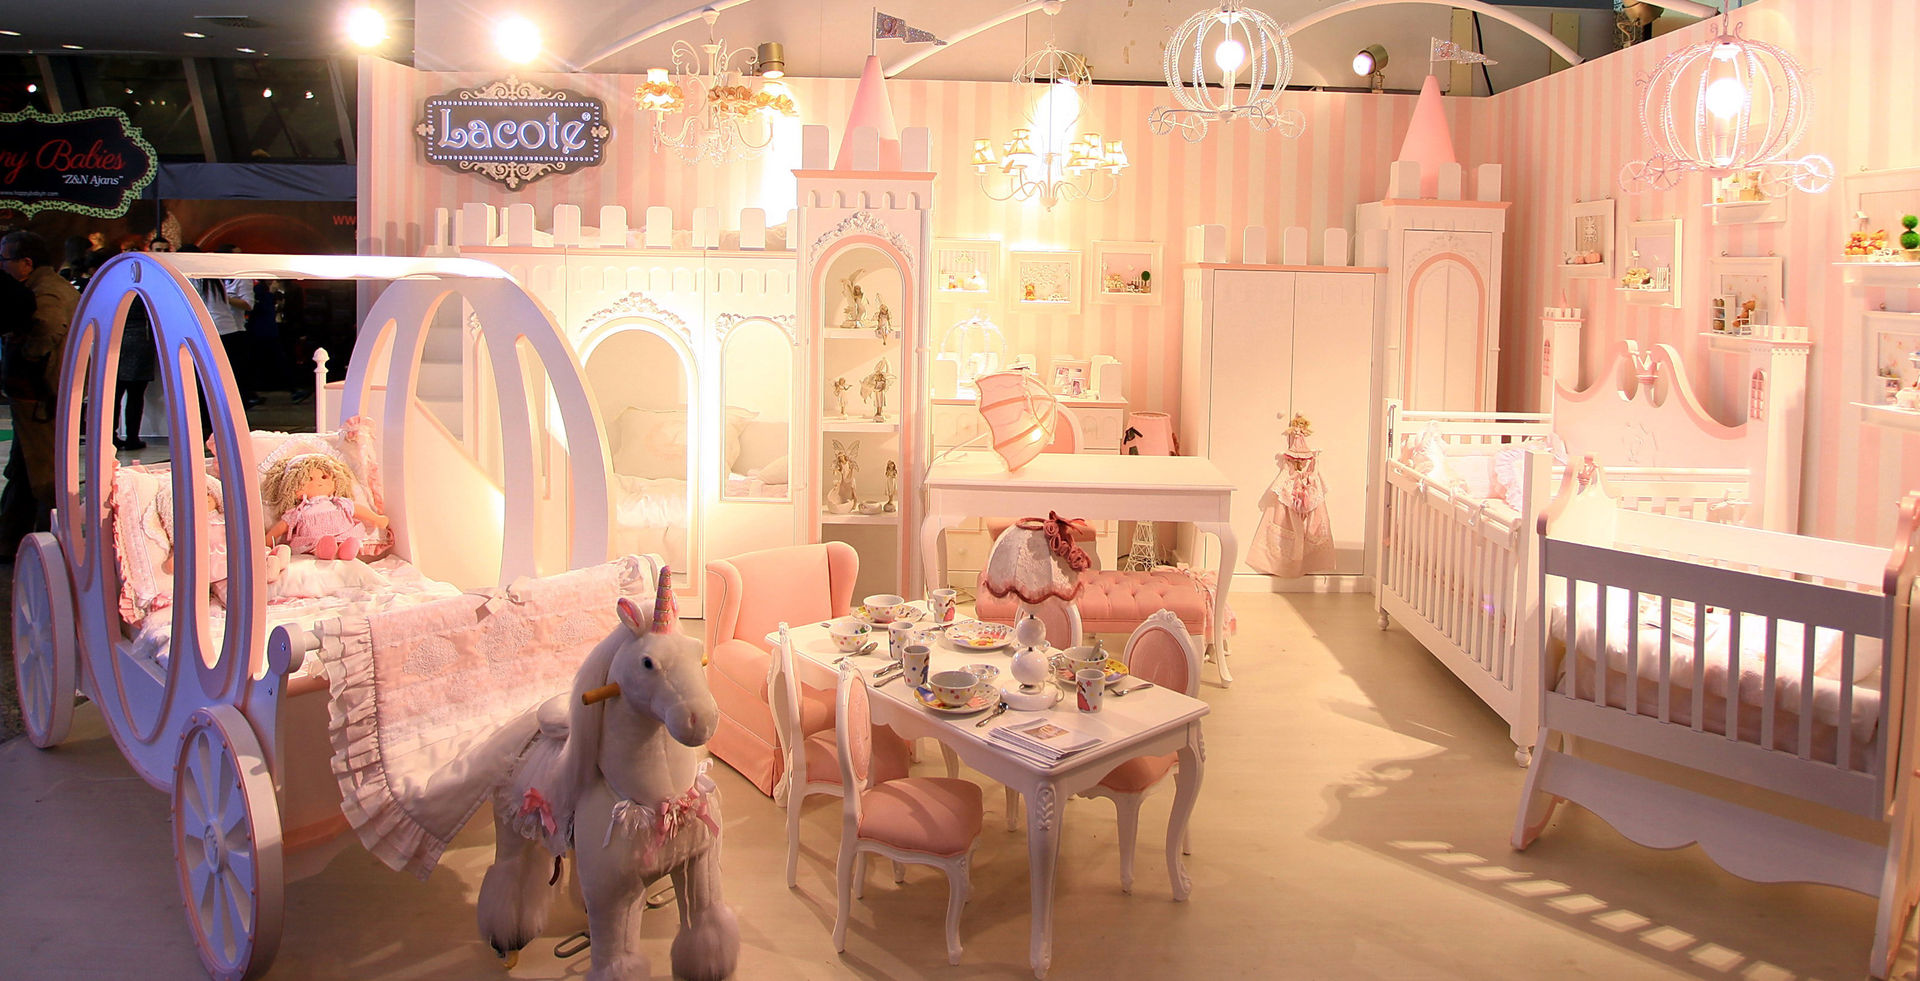 Lacote prenses çocuk ve bebek odası tasarımları, Lacote Design Lacote Design Modern nursery/kids room Beds & cribs